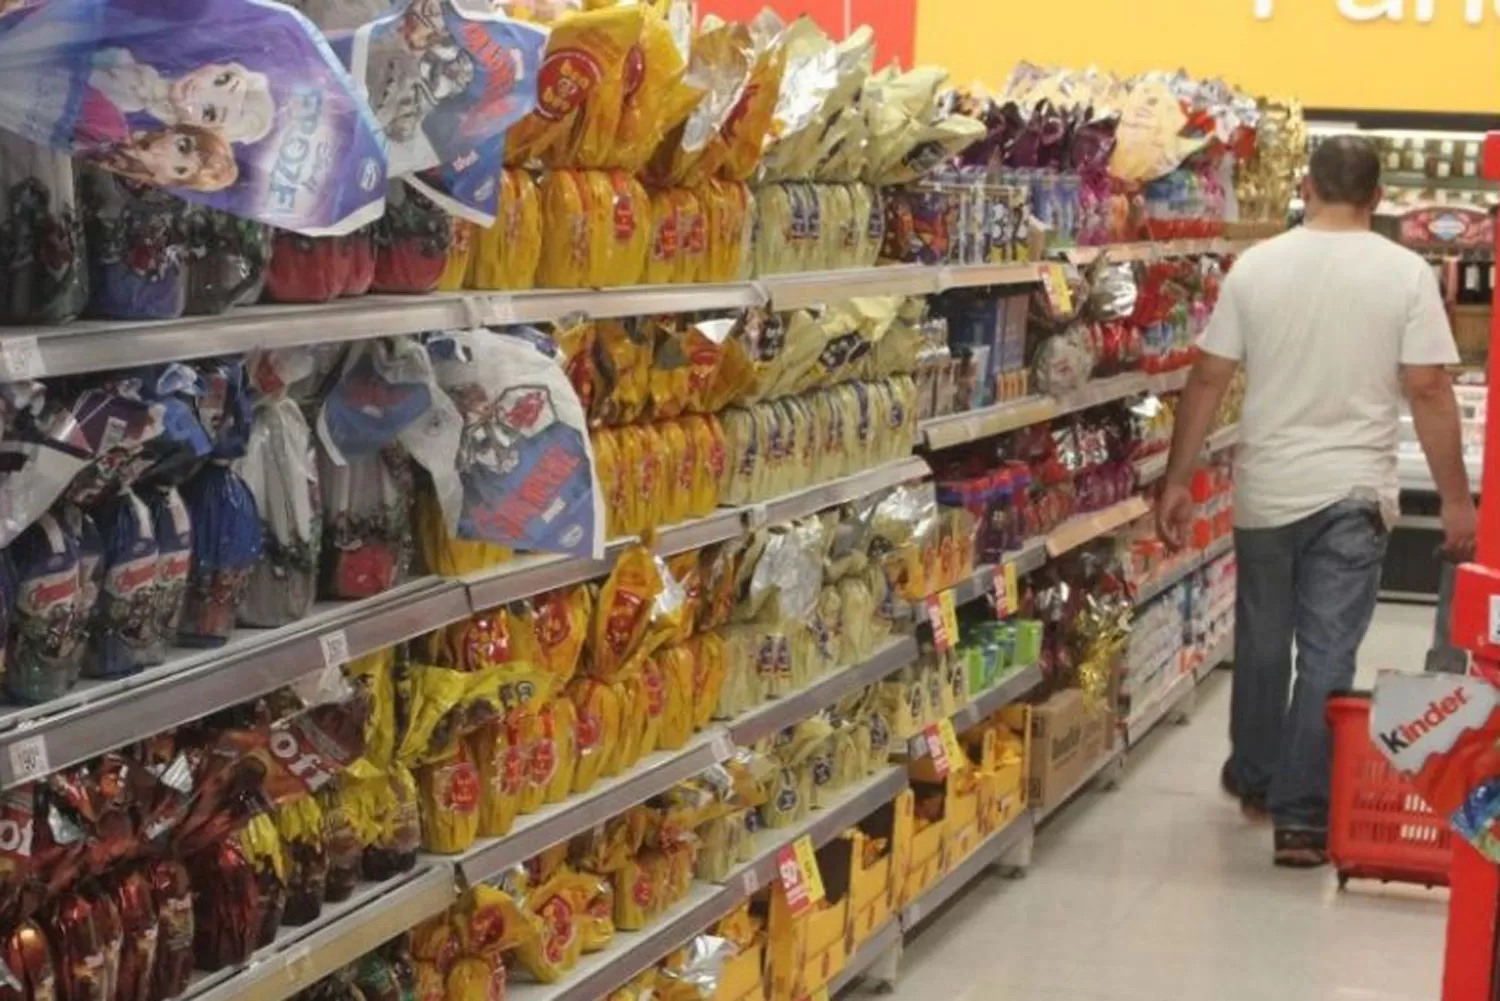 Pascuas con inflación: los productos típicos cuestan casi el doble que el año pasado